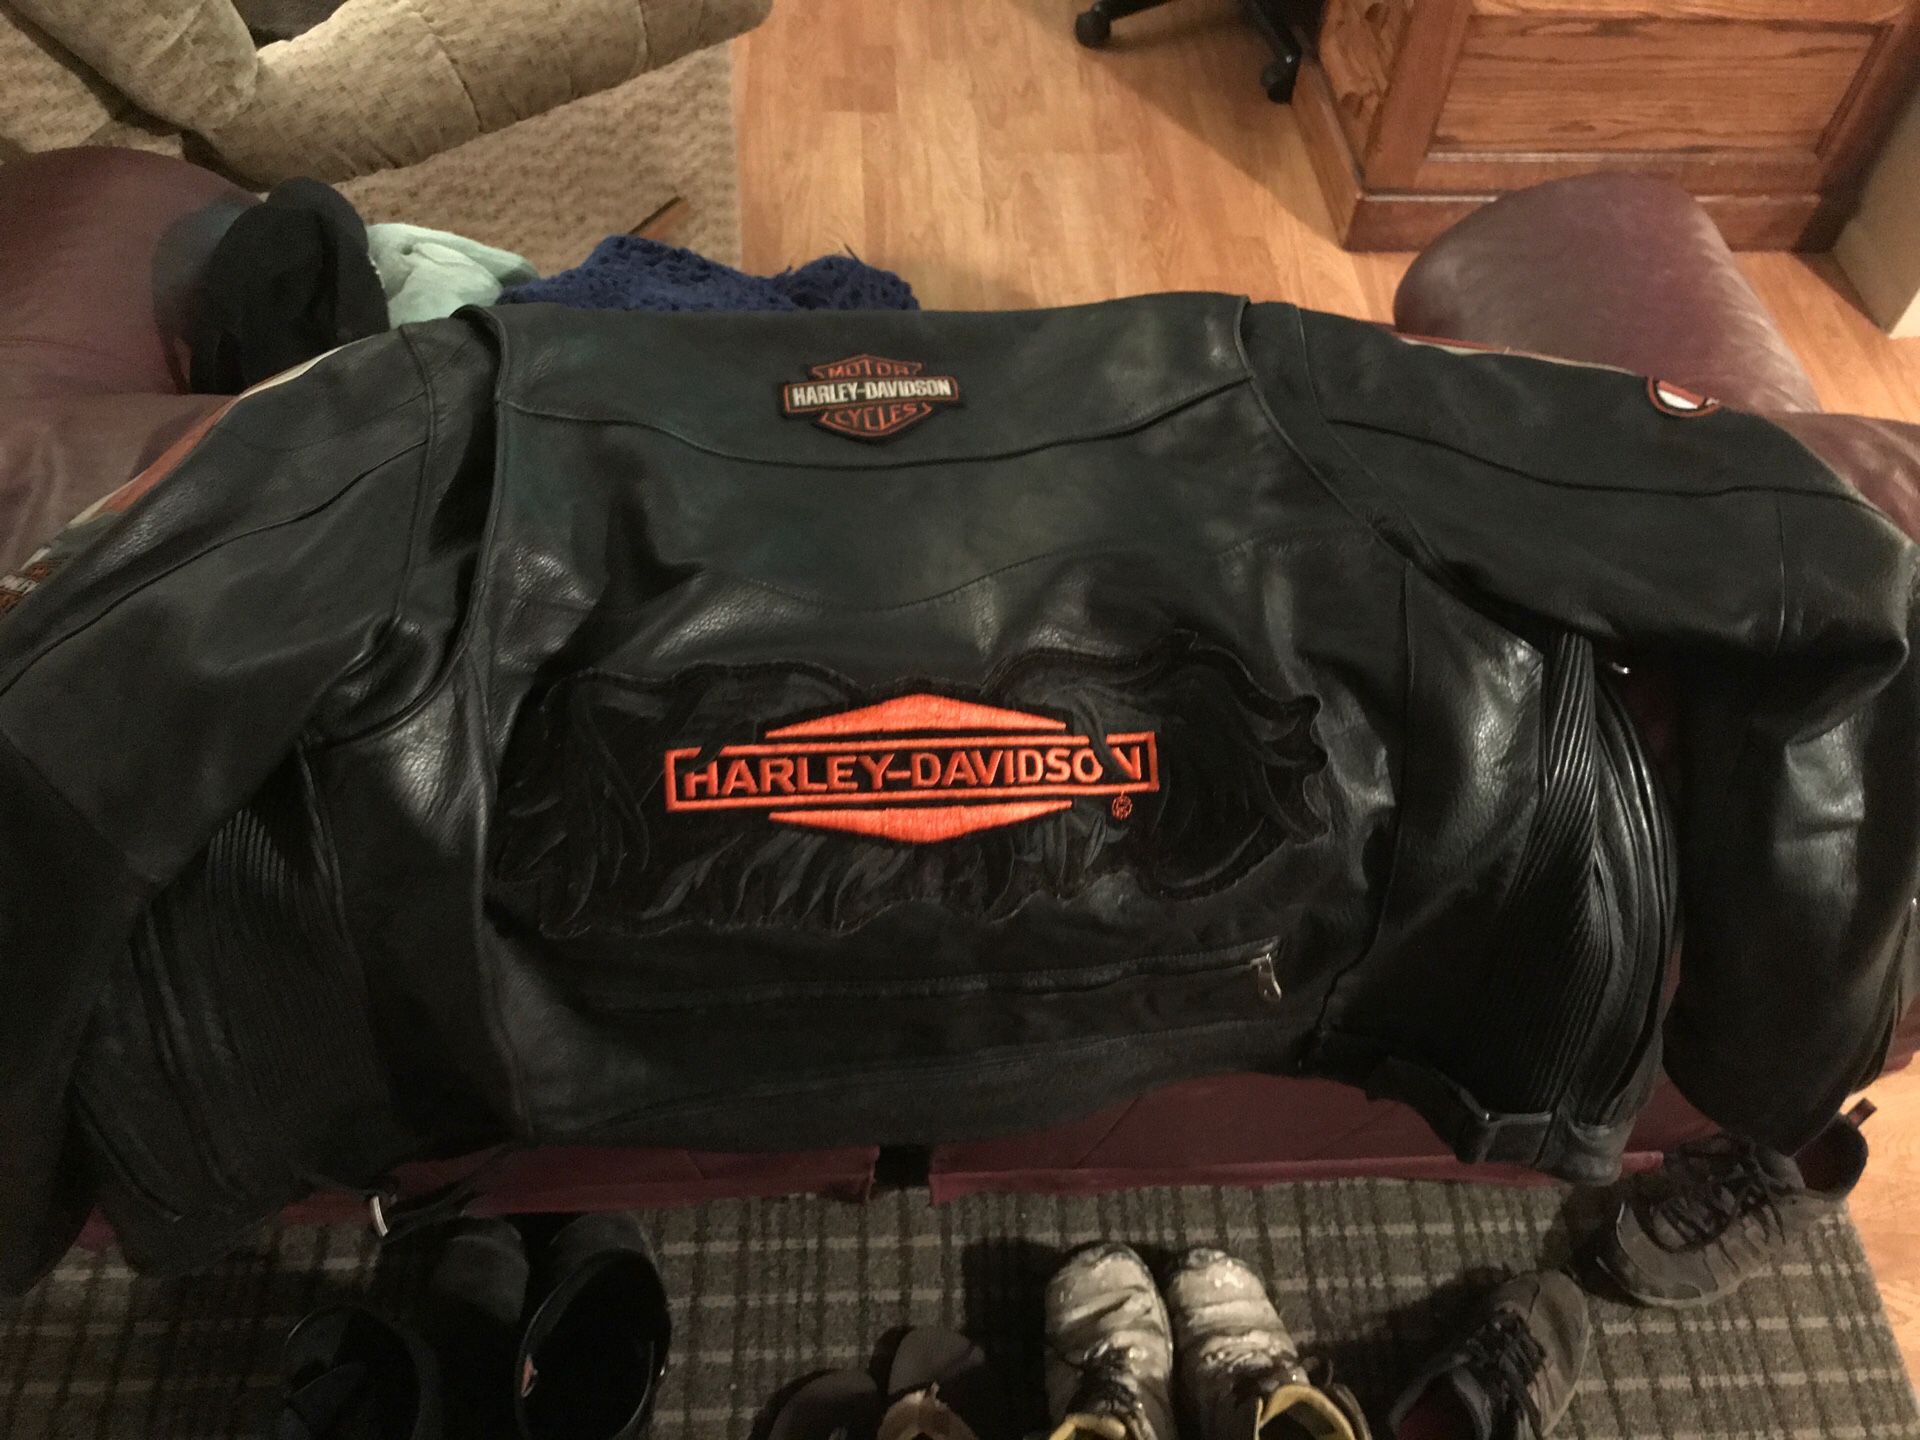 Harley Davidson Leather Jacket Size Large